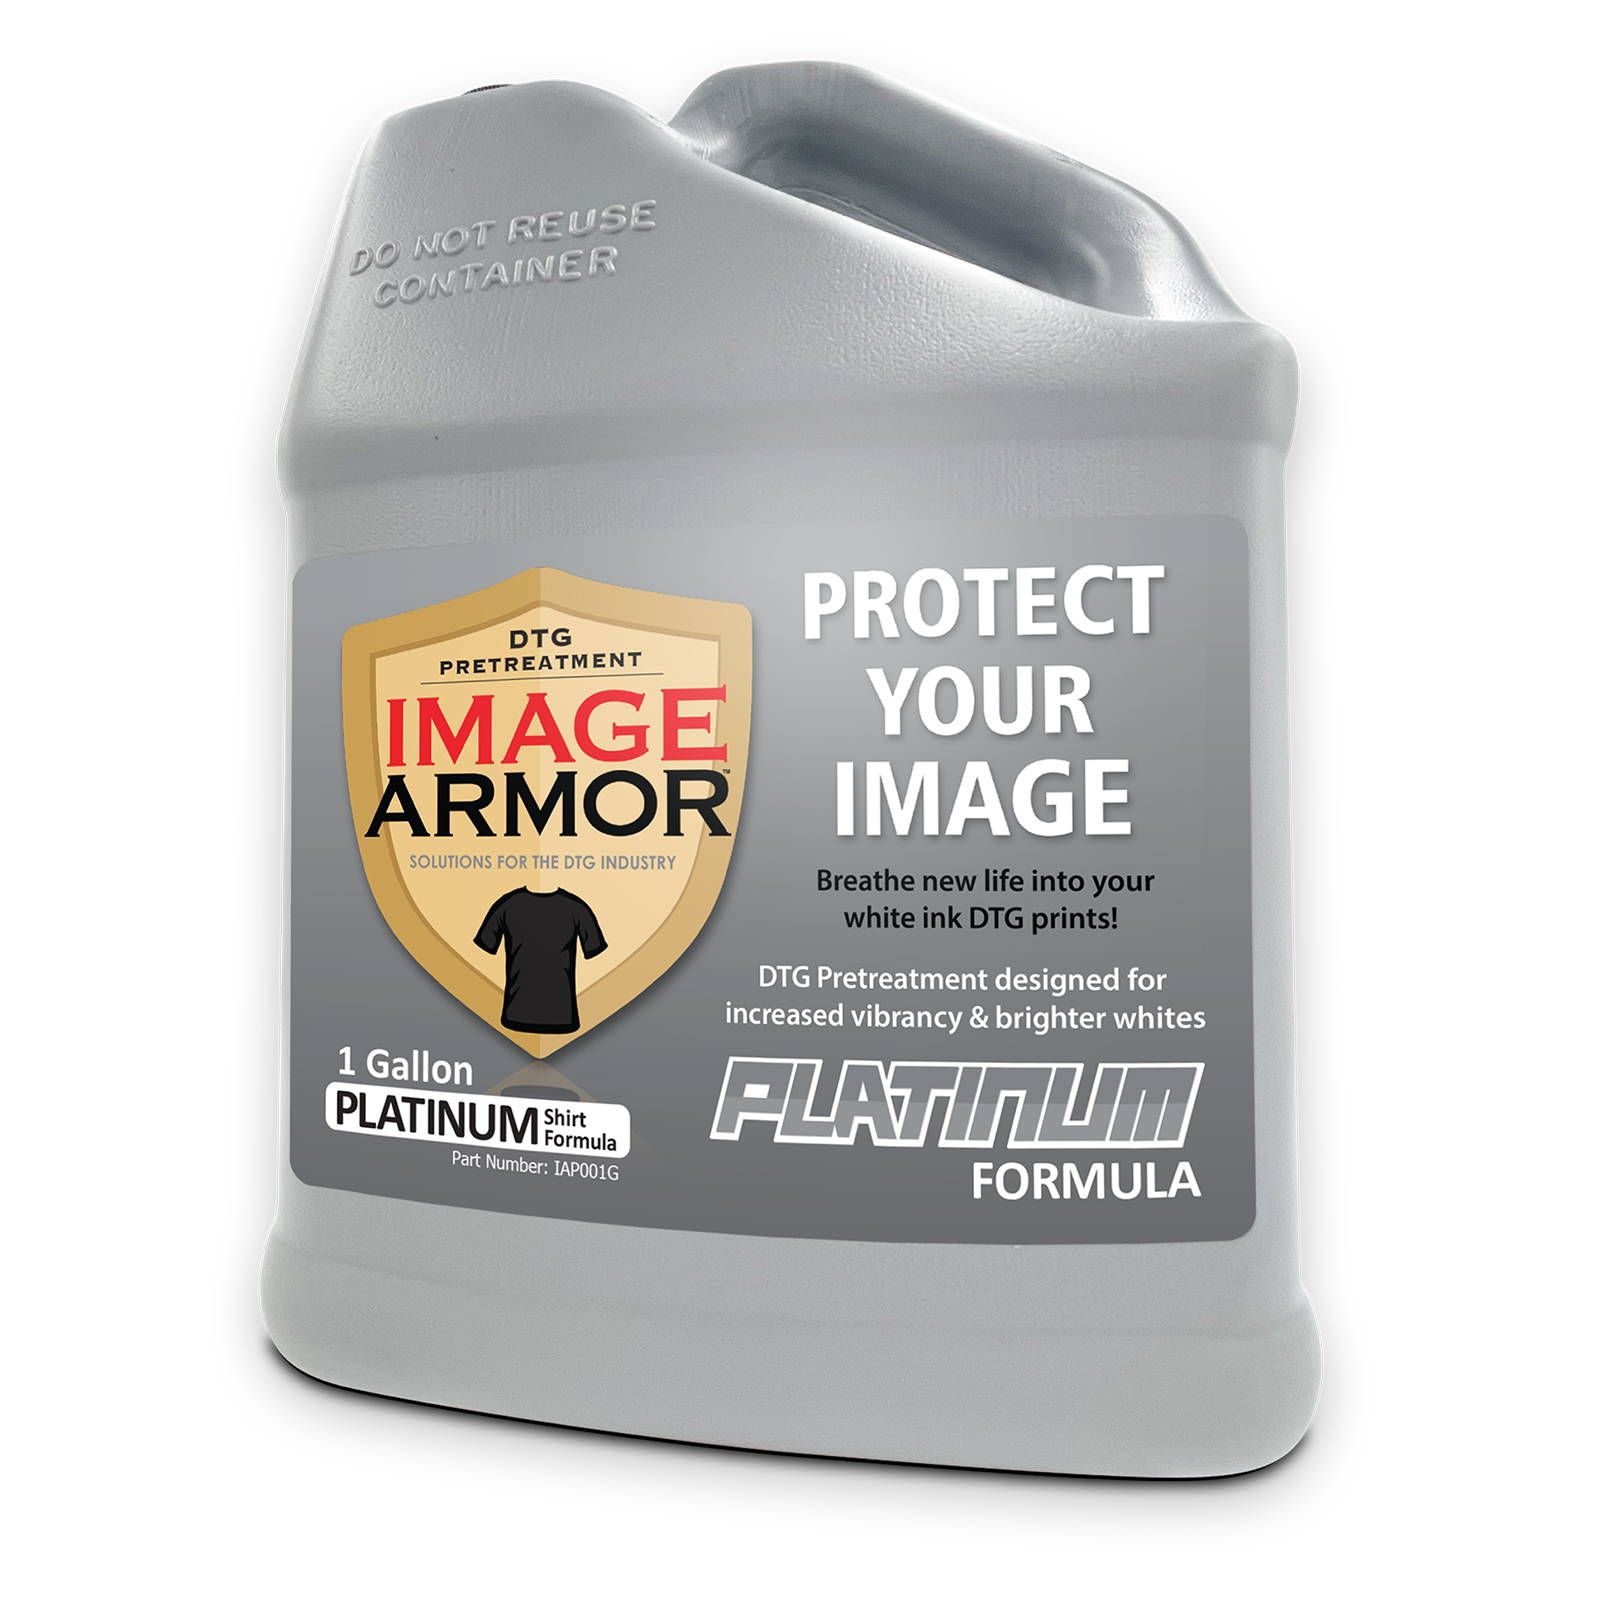 Image Armor Platinum